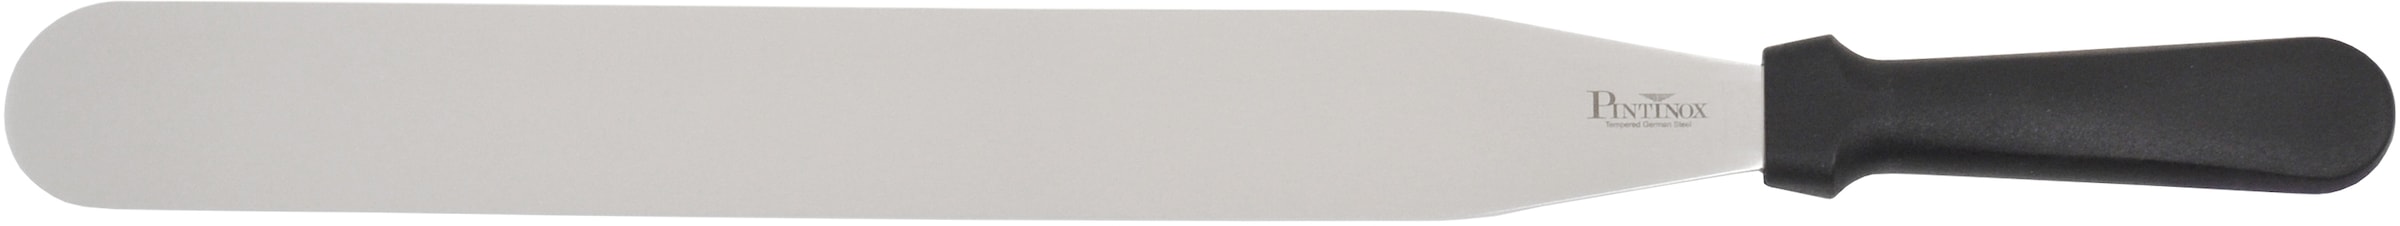 Streichpalette »Professional«, (1 tlg.), Edelstahl, spülmaschinengeeignet, Lg. 35,5 cm